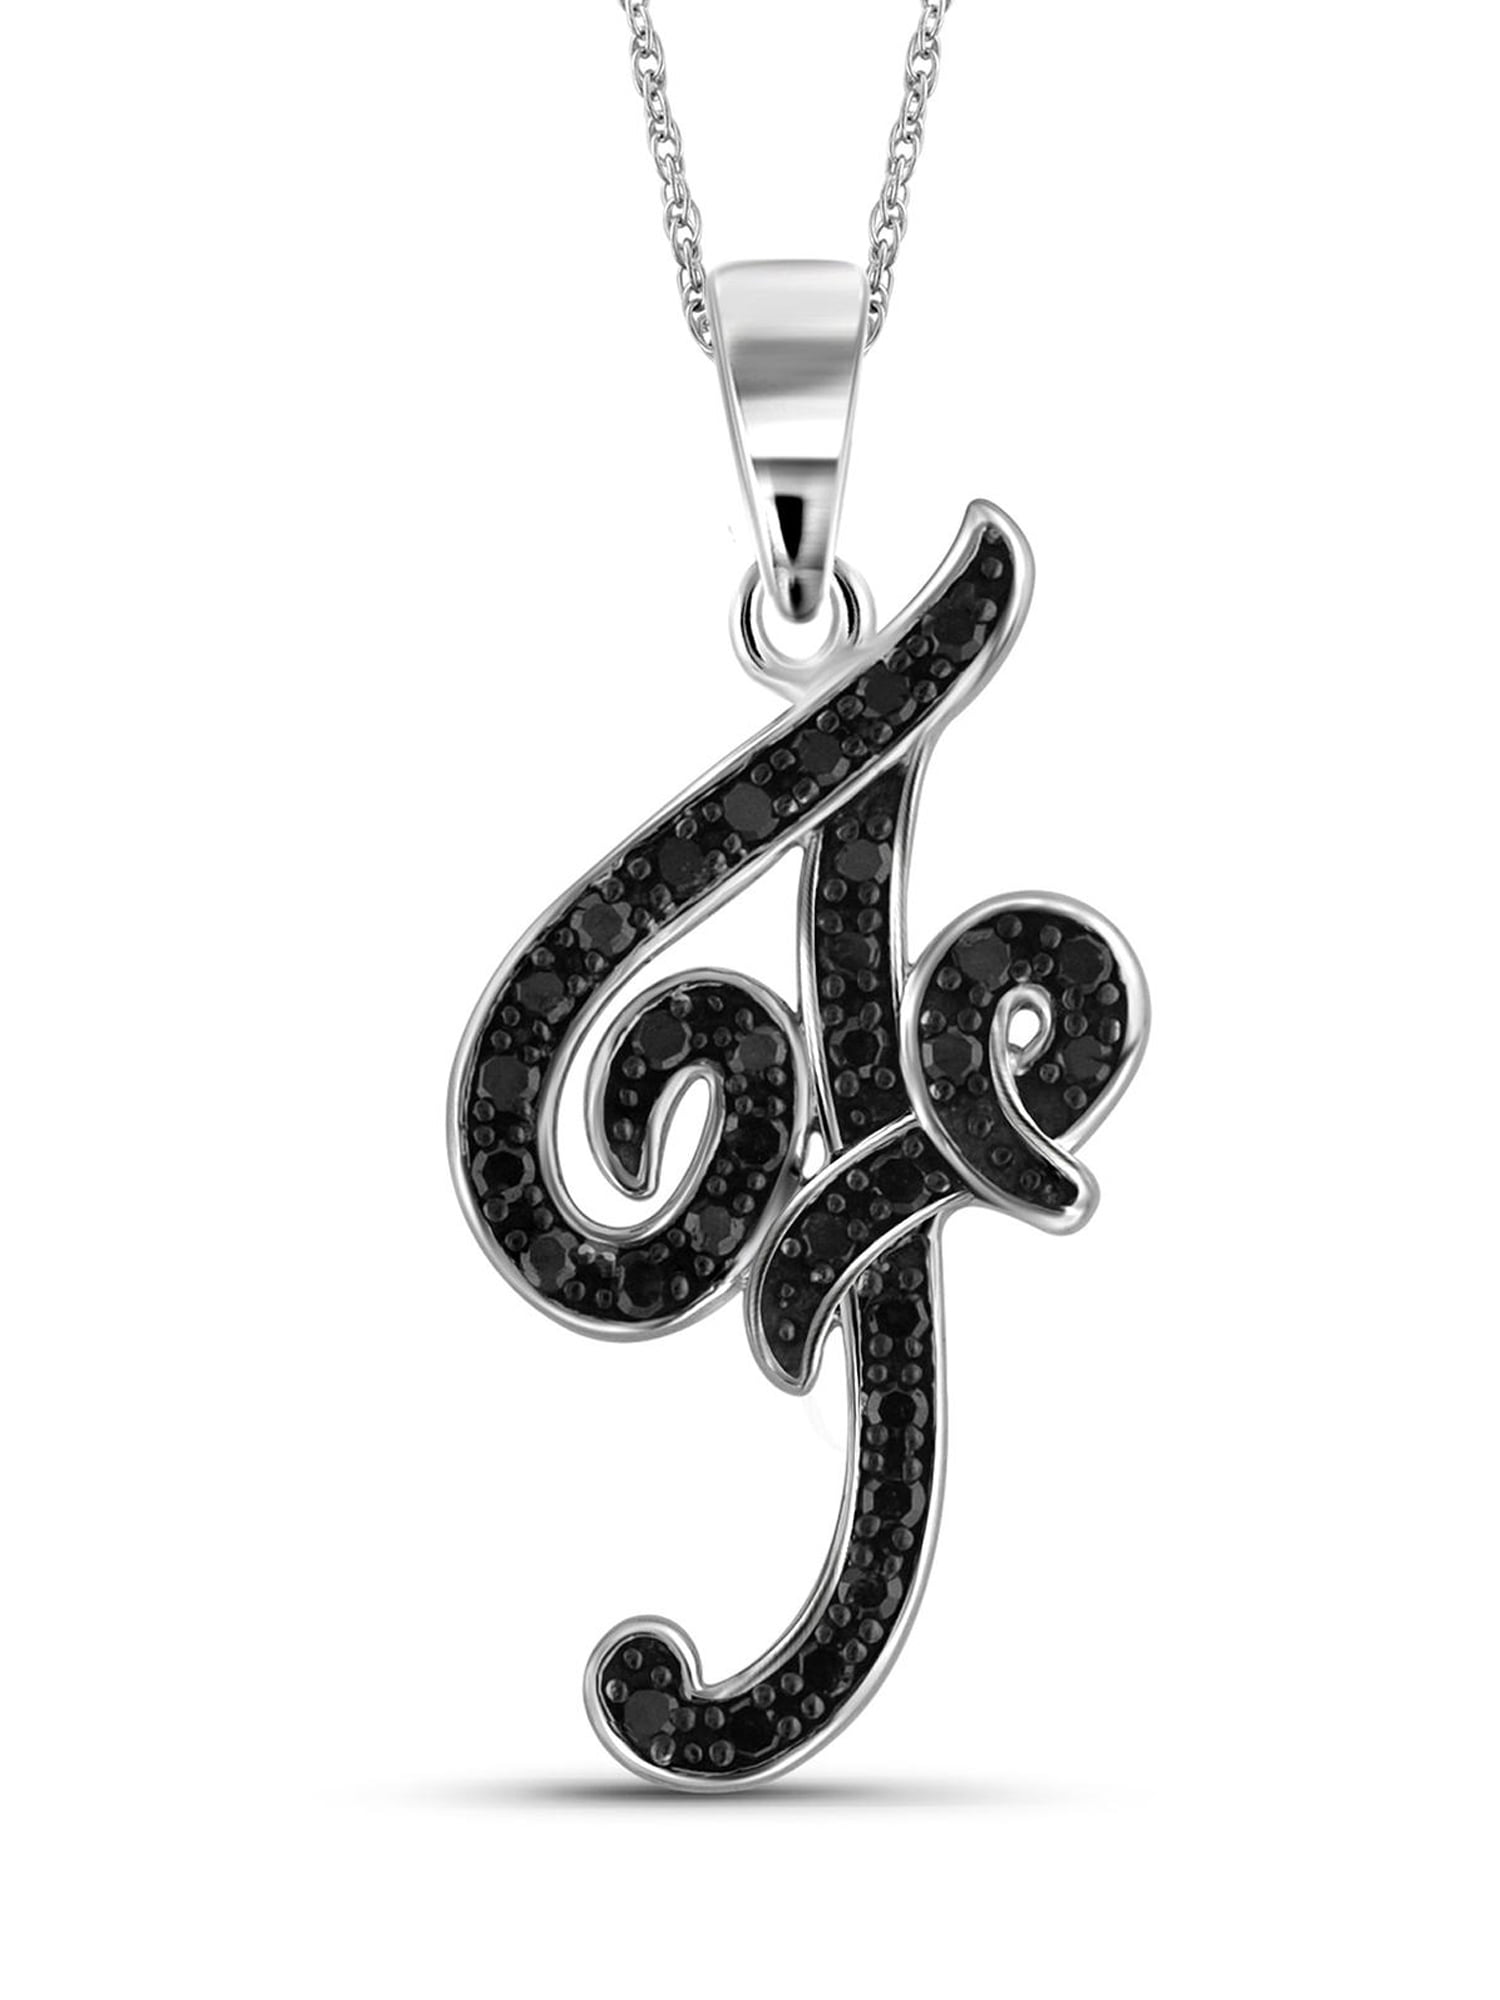 V necklace/sterling sliver plated necklace/ Dainty V necklace/ Cubic V Necklace/ Initial Necklac/ Monogram Personalized Necklace/ Letter V